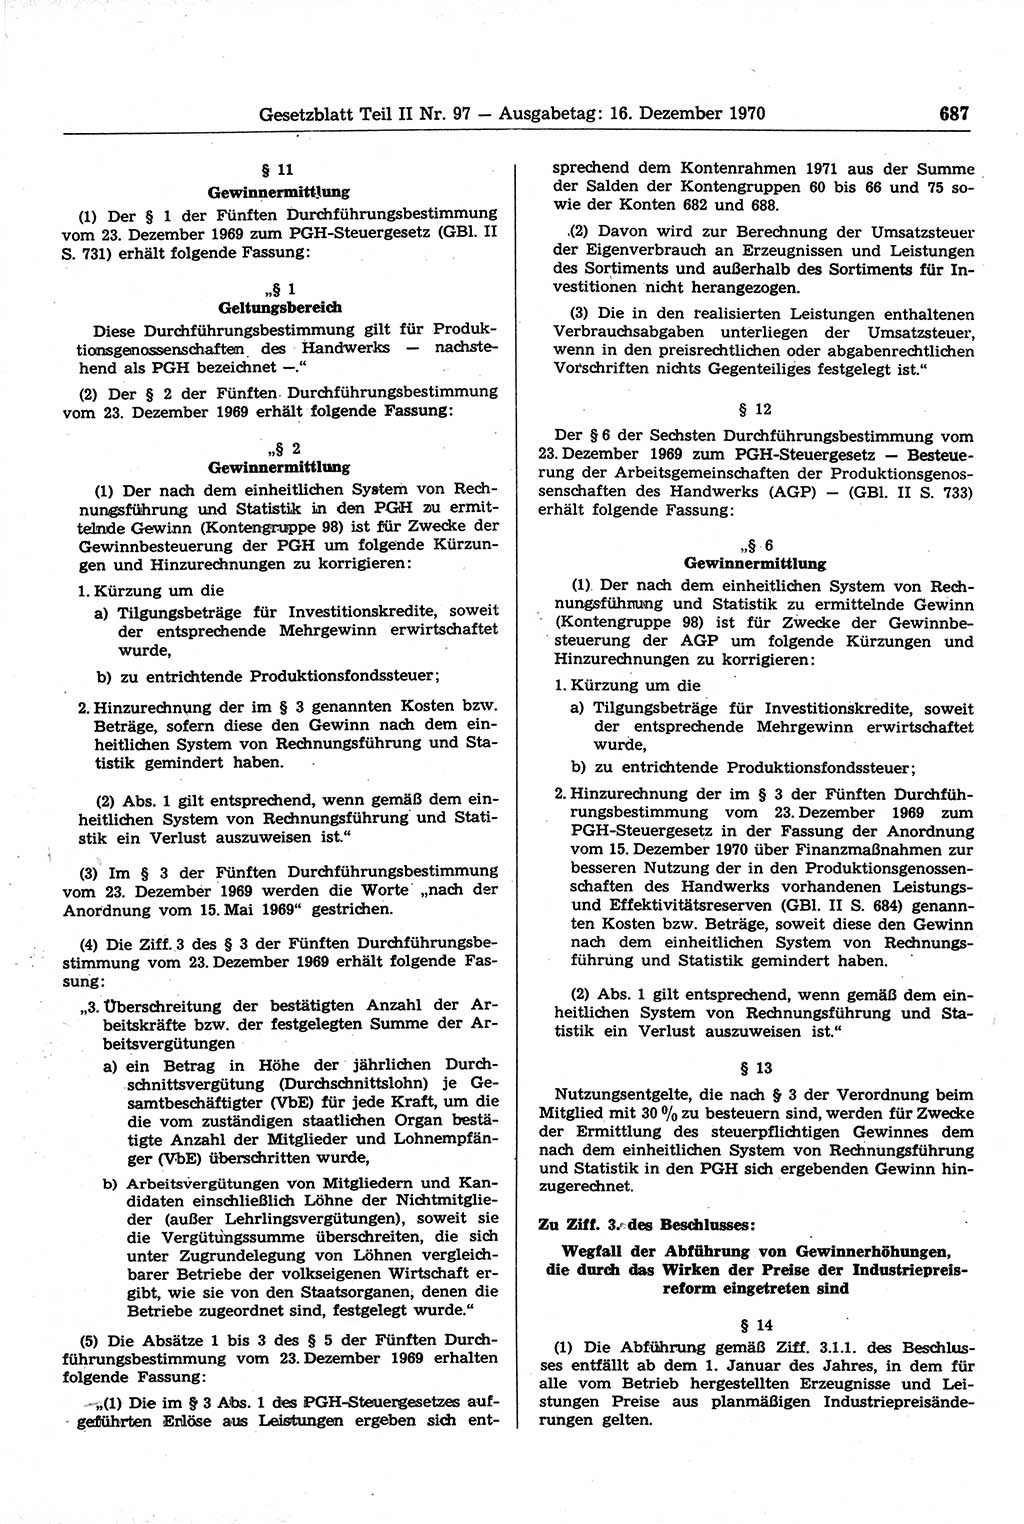 Gesetzblatt (GBl.) der Deutschen Demokratischen Republik (DDR) Teil ⅠⅠ 1970, Seite 687 (GBl. DDR ⅠⅠ 1970, S. 687)